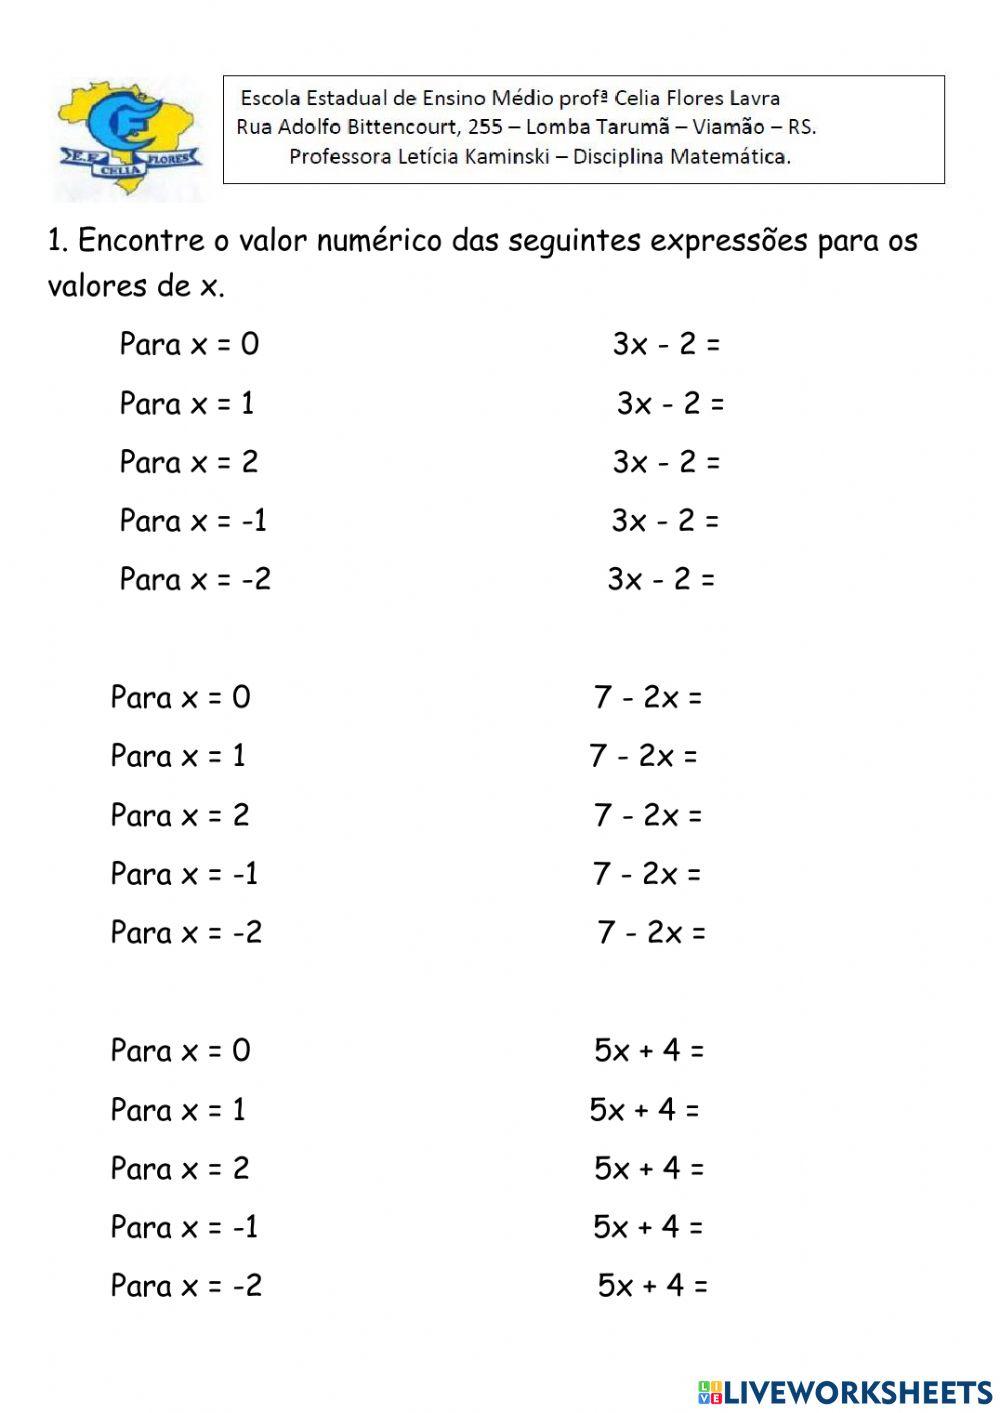 Valor Numérico de uma expressão Algébrica.